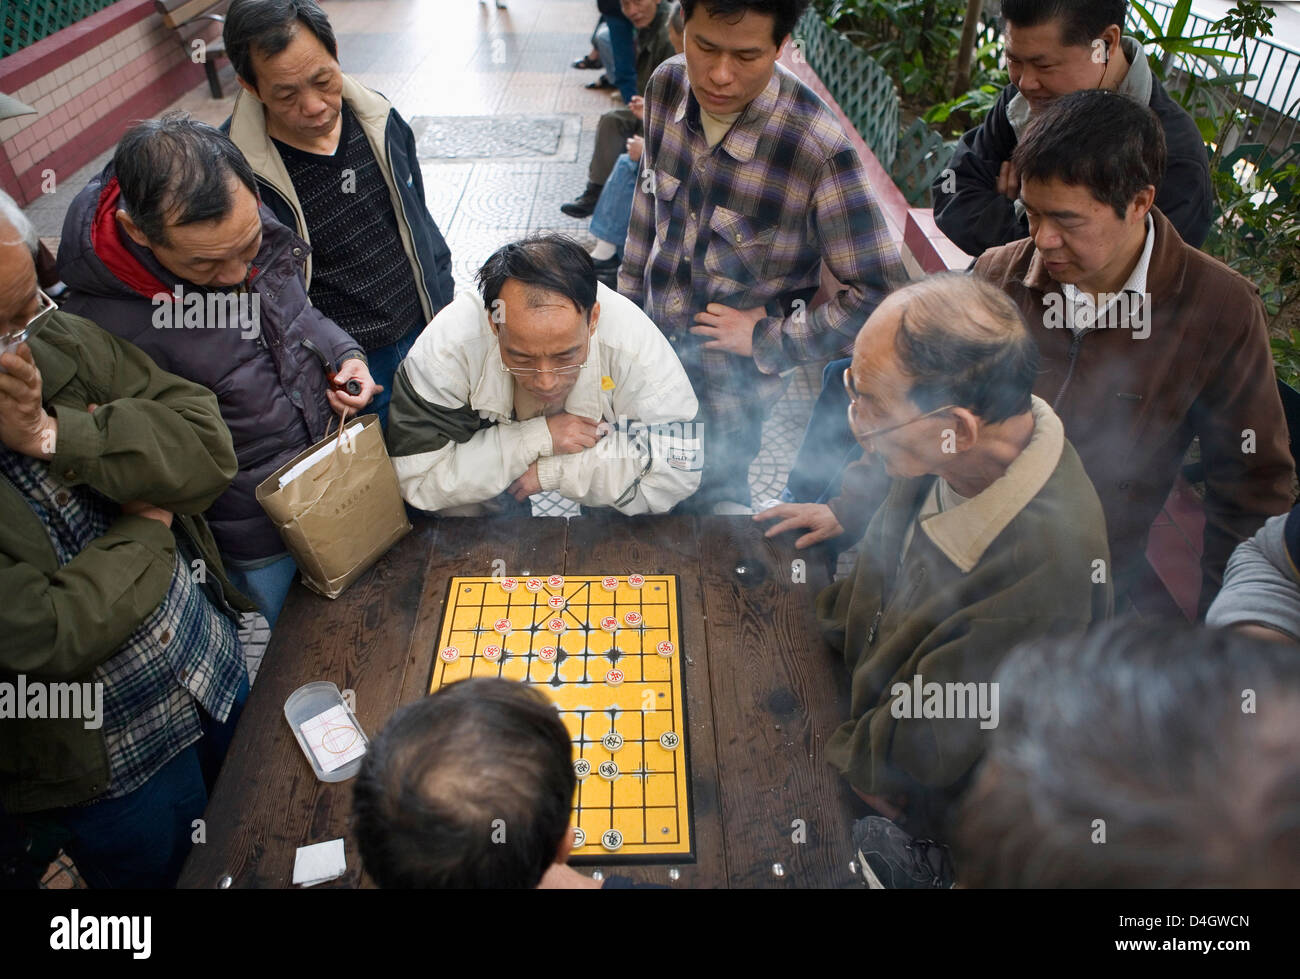 Zwei chinesische Männer spielen chinesisches Schach auf der Straße, andere Männer zusehen, Hong Kong, China Stockfoto